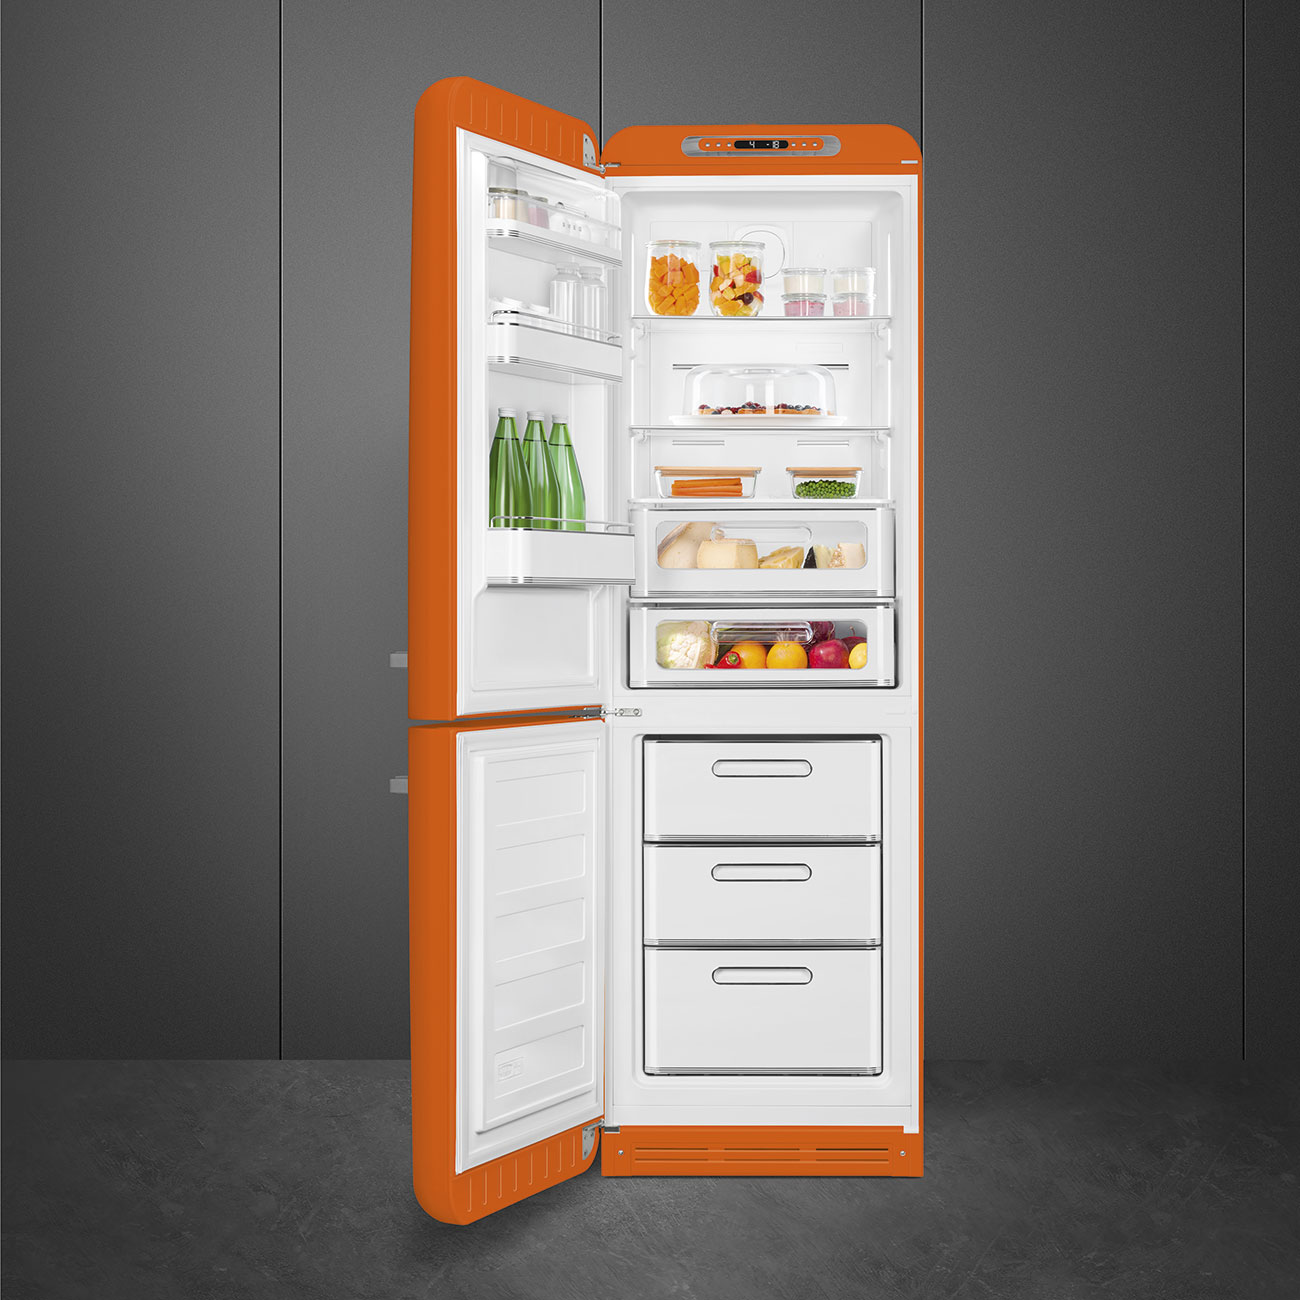 Orange refrigerator - Smeg_3